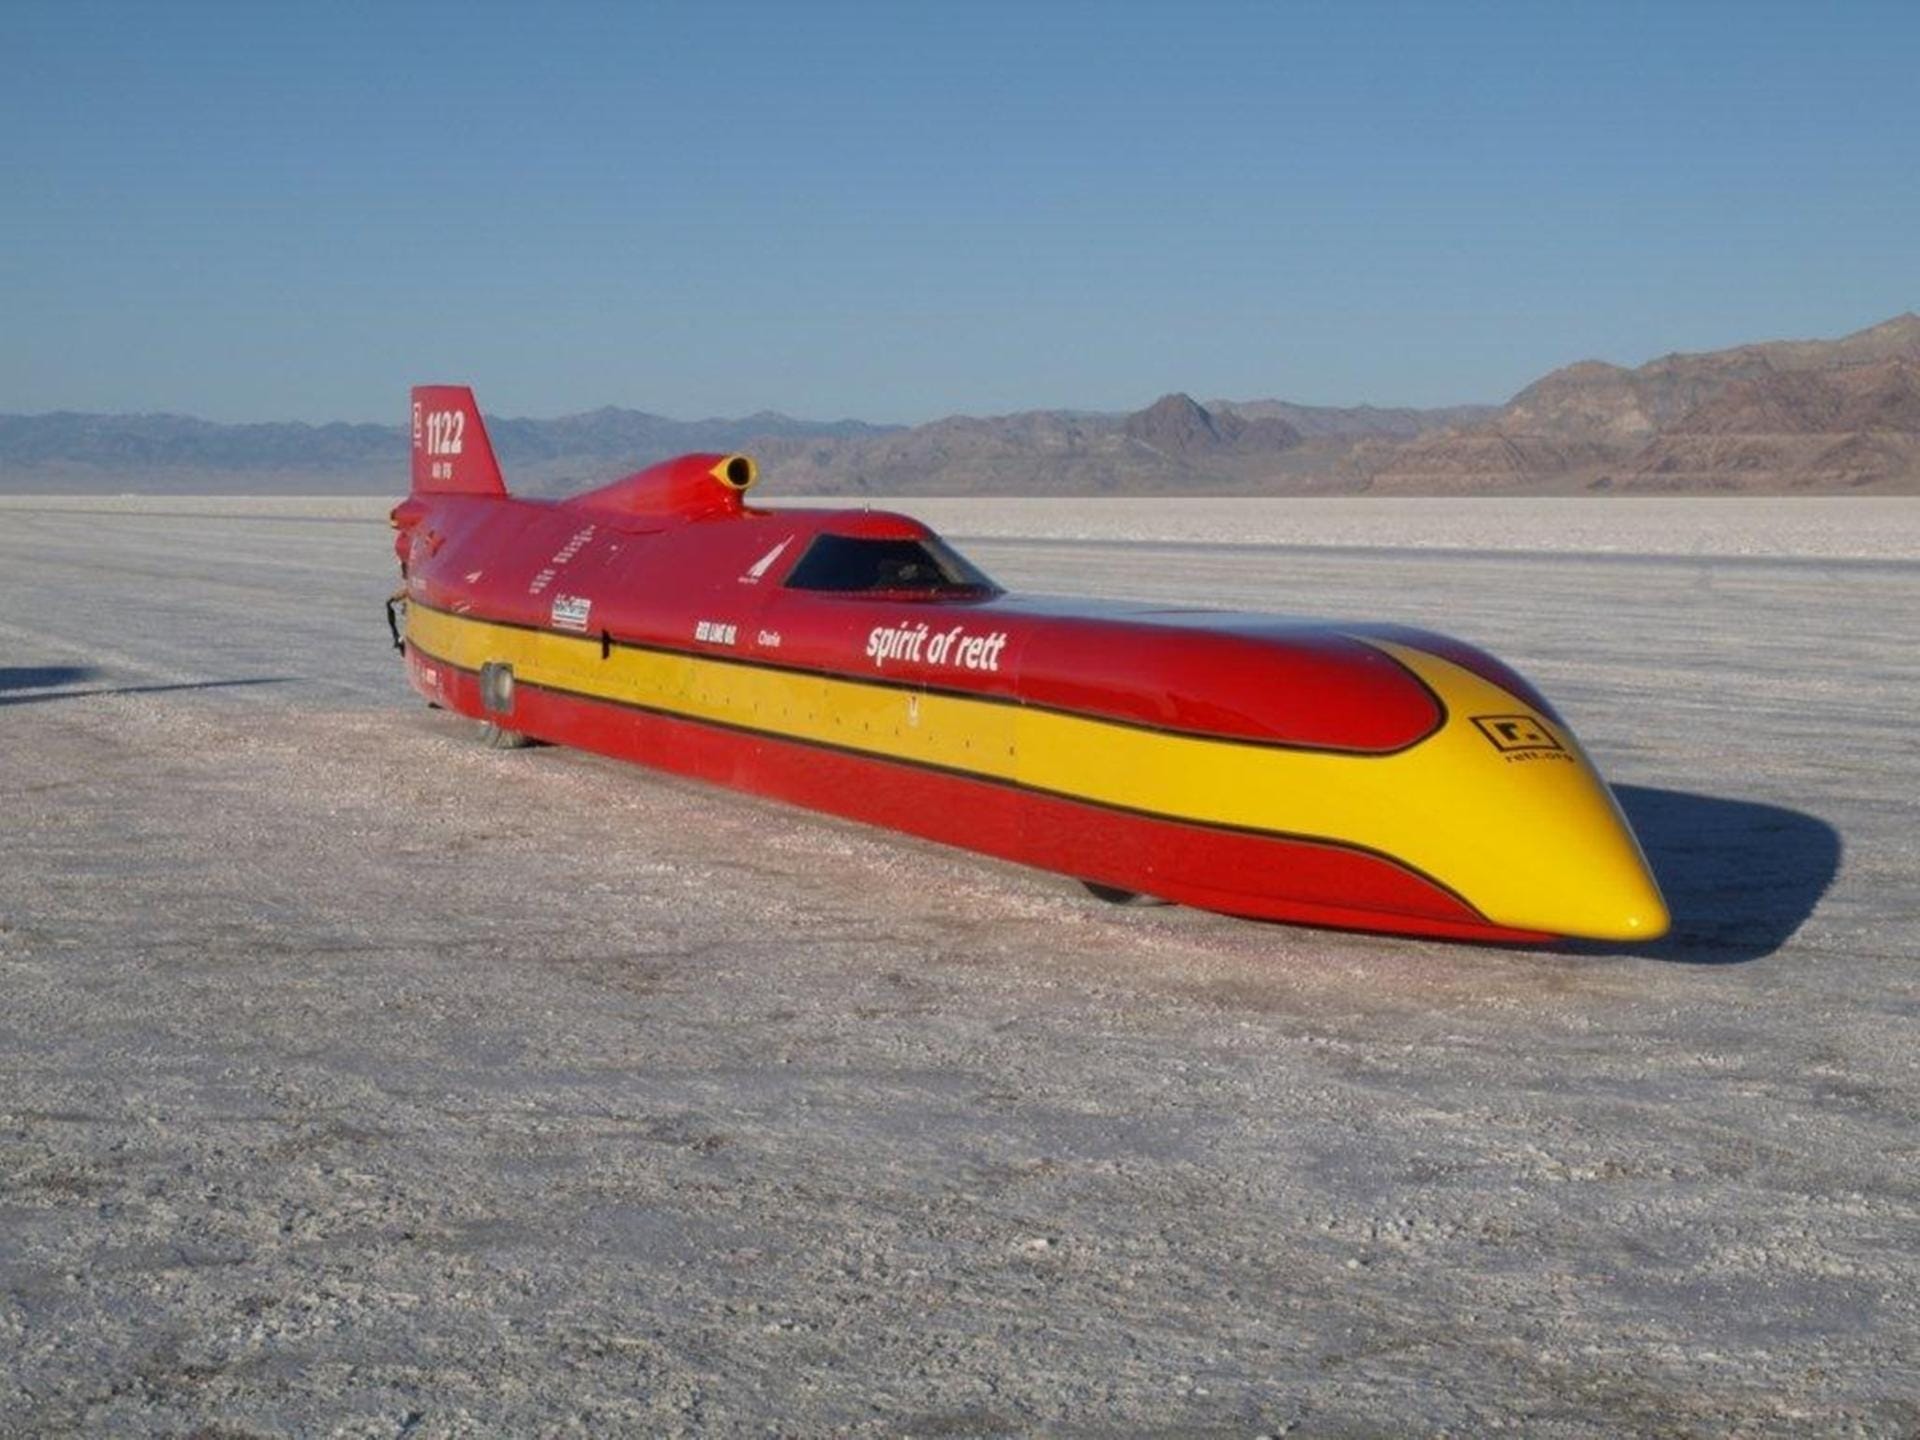 Schnellstes radangetriebenes Auto mit Verbrennungsmotor ohne Motoraufladung ist der Spirit of Rett Streamliner des Amerikaners Charles E. Nearburg (666,776 km/h).